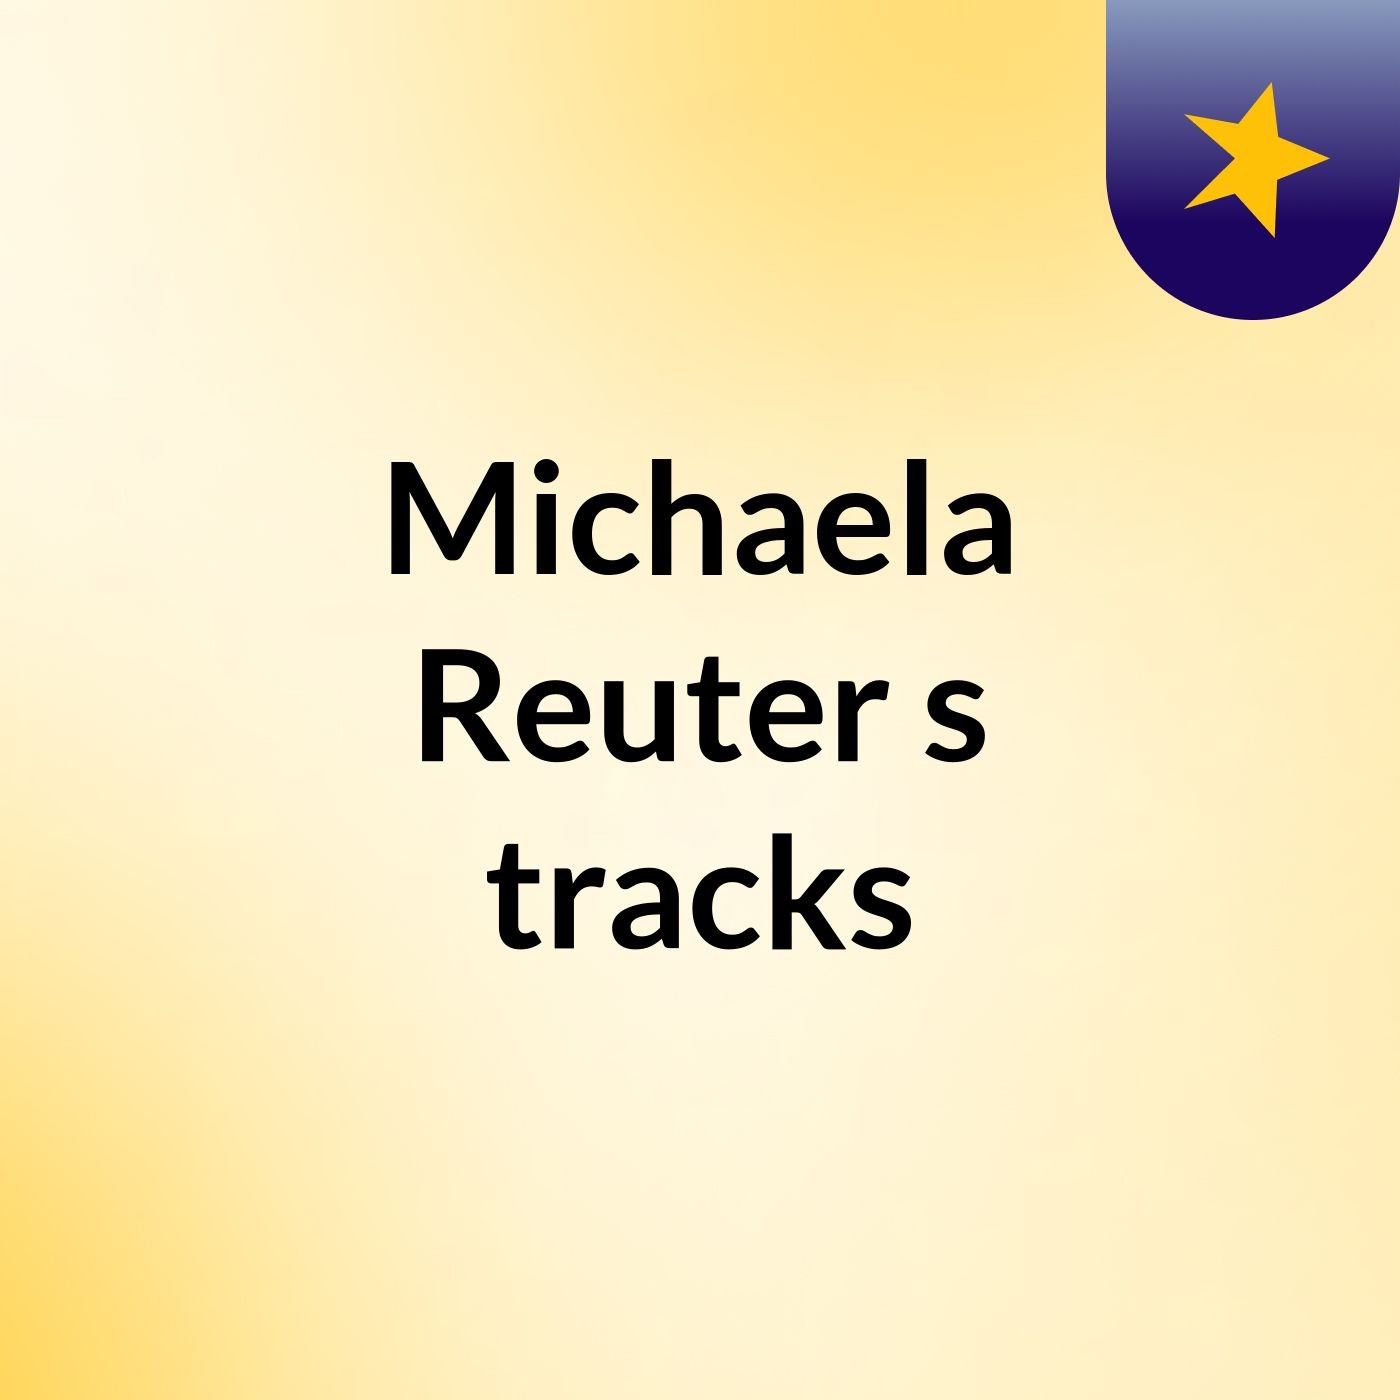 Michaela Reuter's tracks